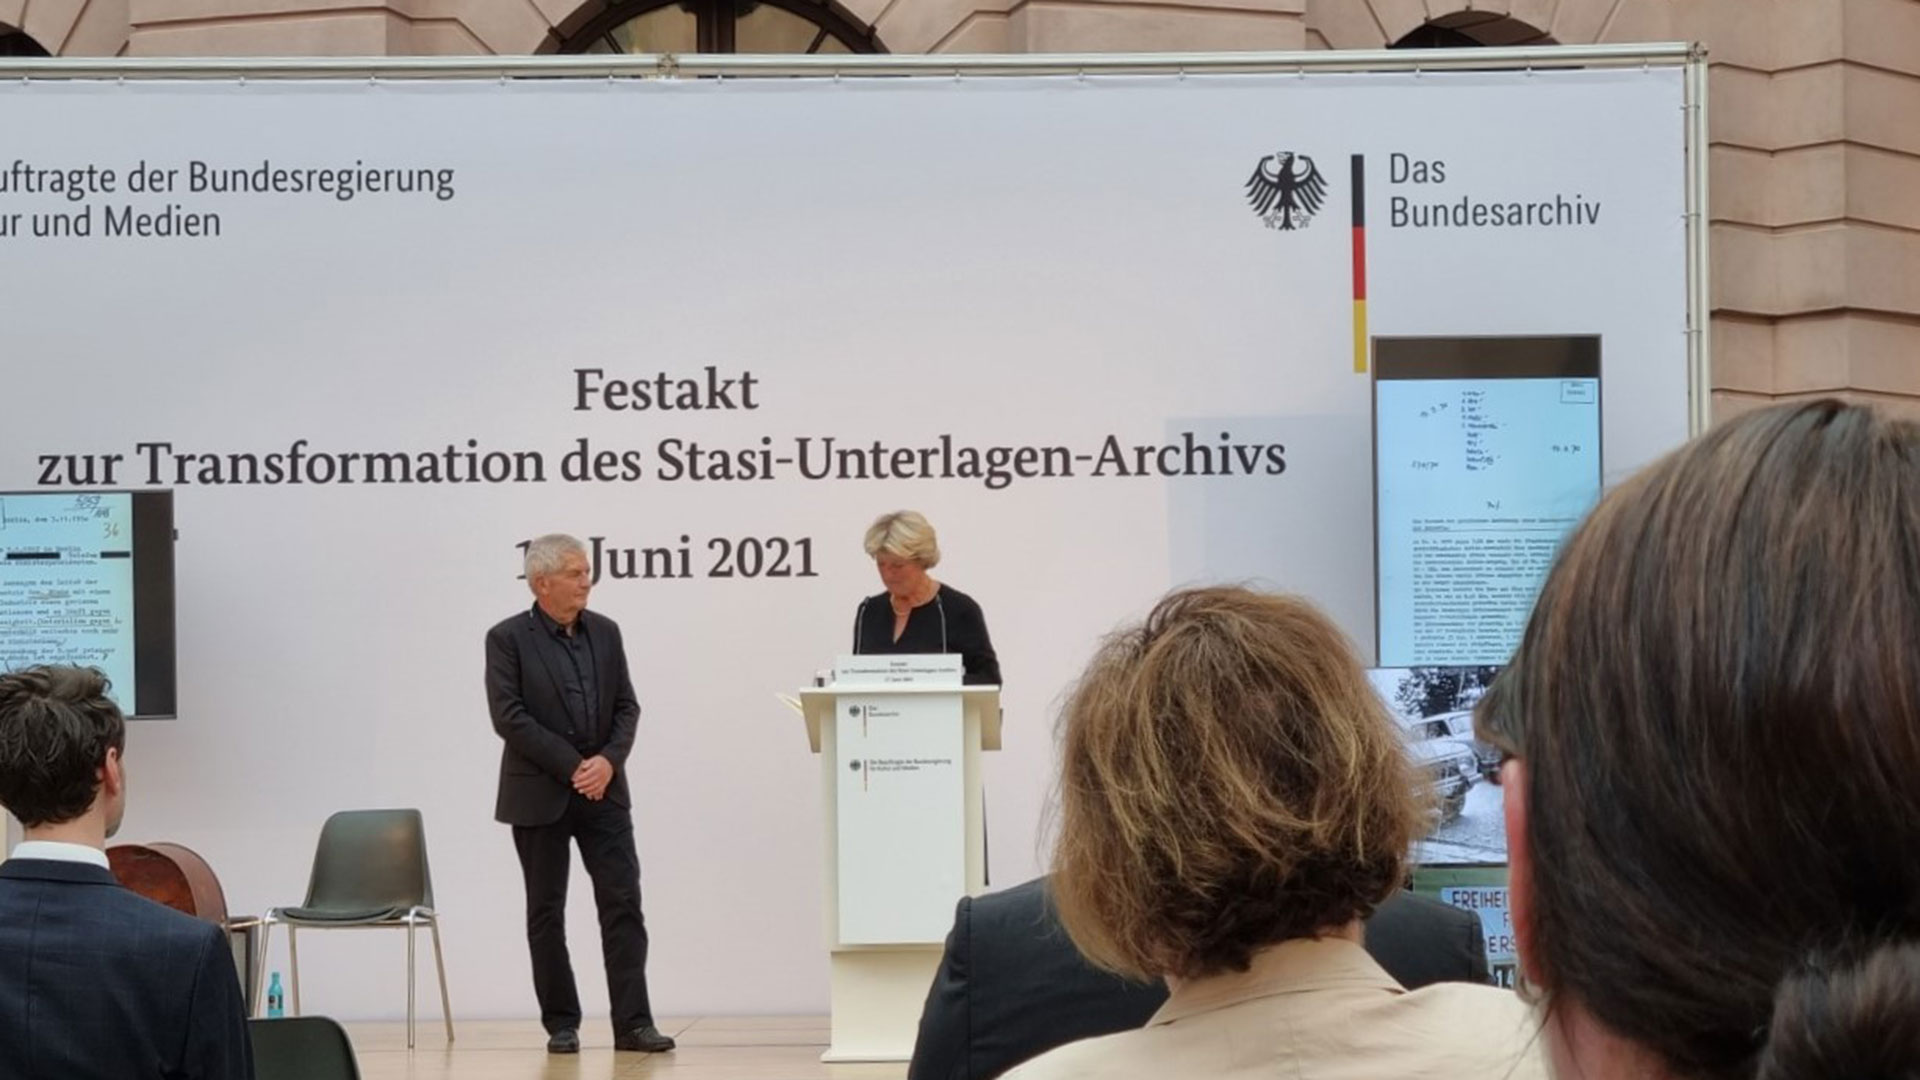 Transformation des Stasi-Unterlagen-Archivs - Festakt zur Transformation des Stasiunterlagen Archivs am 17. Juni 2021 in Berlin